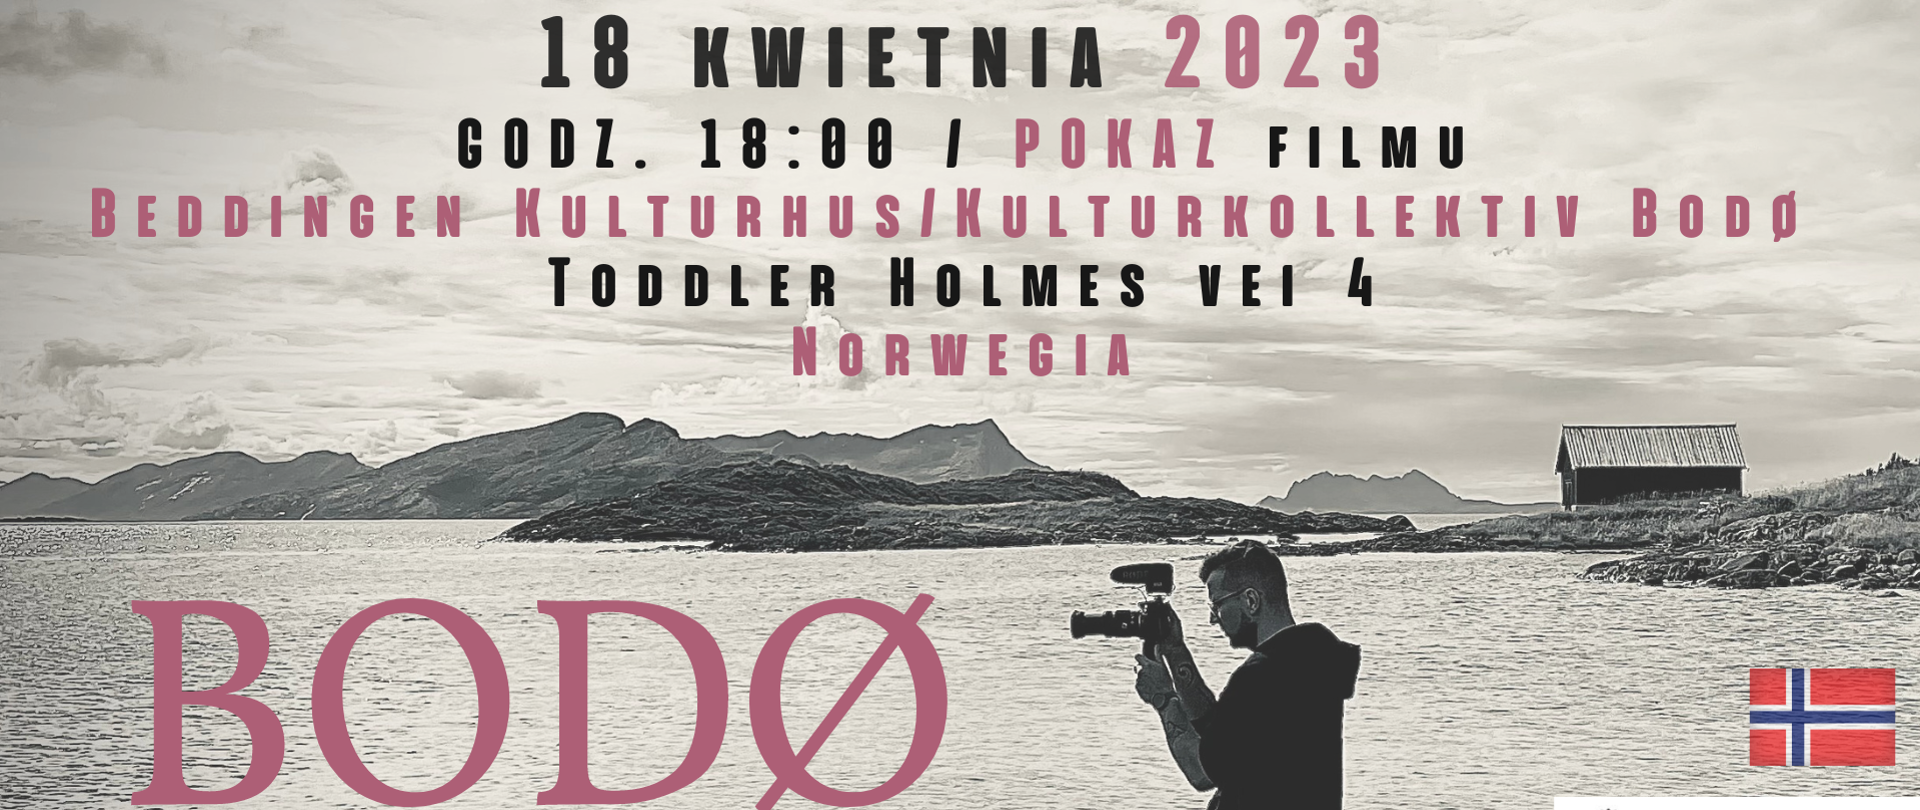 Bodø - film dokumentalny - zaproszenie